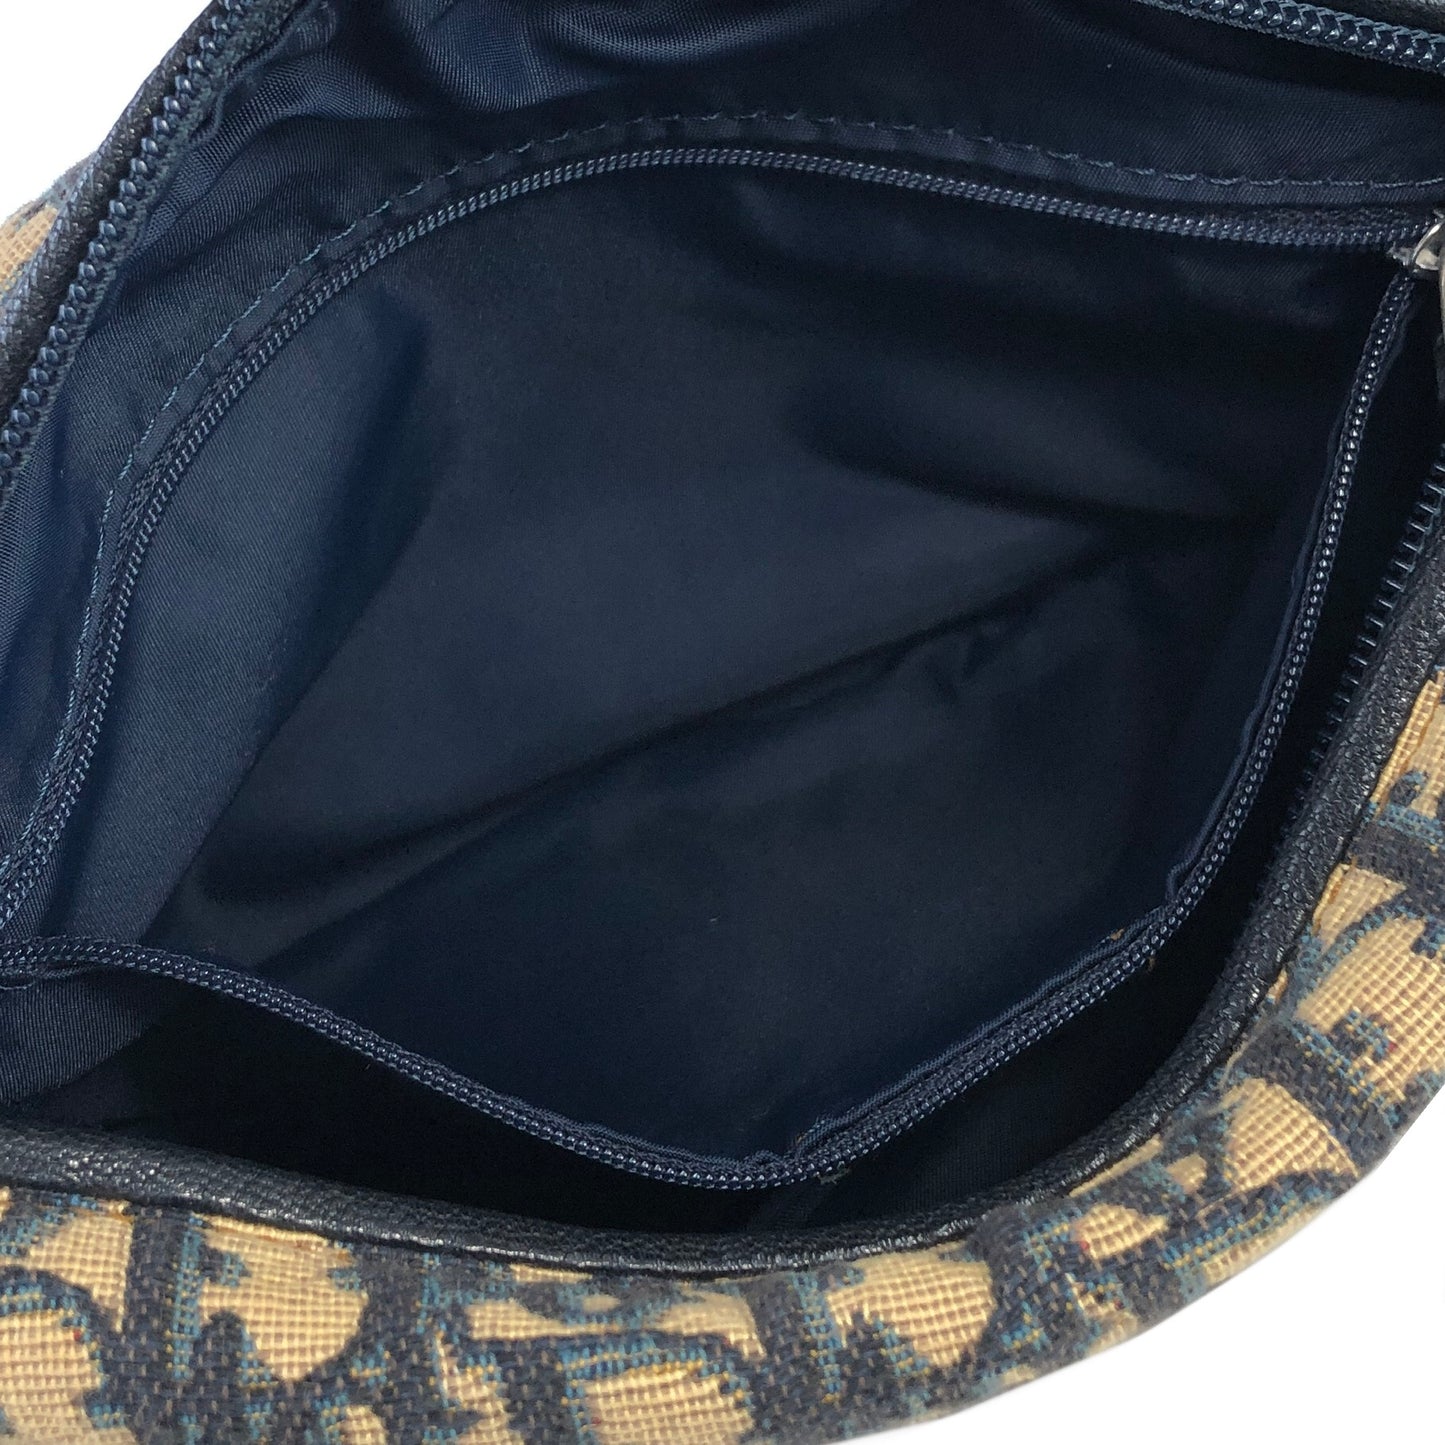 Christian Dior Trotter Jacquard Leather Shoulder bag Hobobag Navy Vintage wte43h